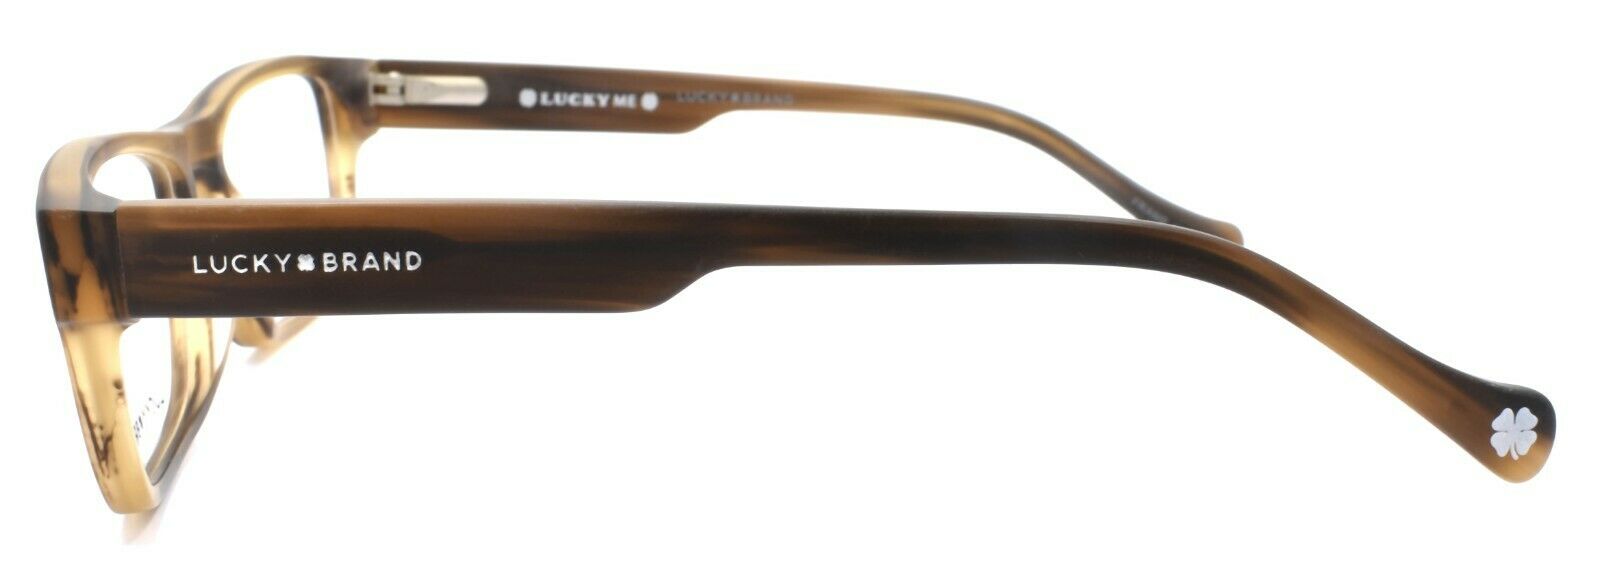 3-LUCKY BRAND D804 Kids Boys Eyeglasses Frames 49-16-130 Matte Brown Horn-751286295252-IKSpecs